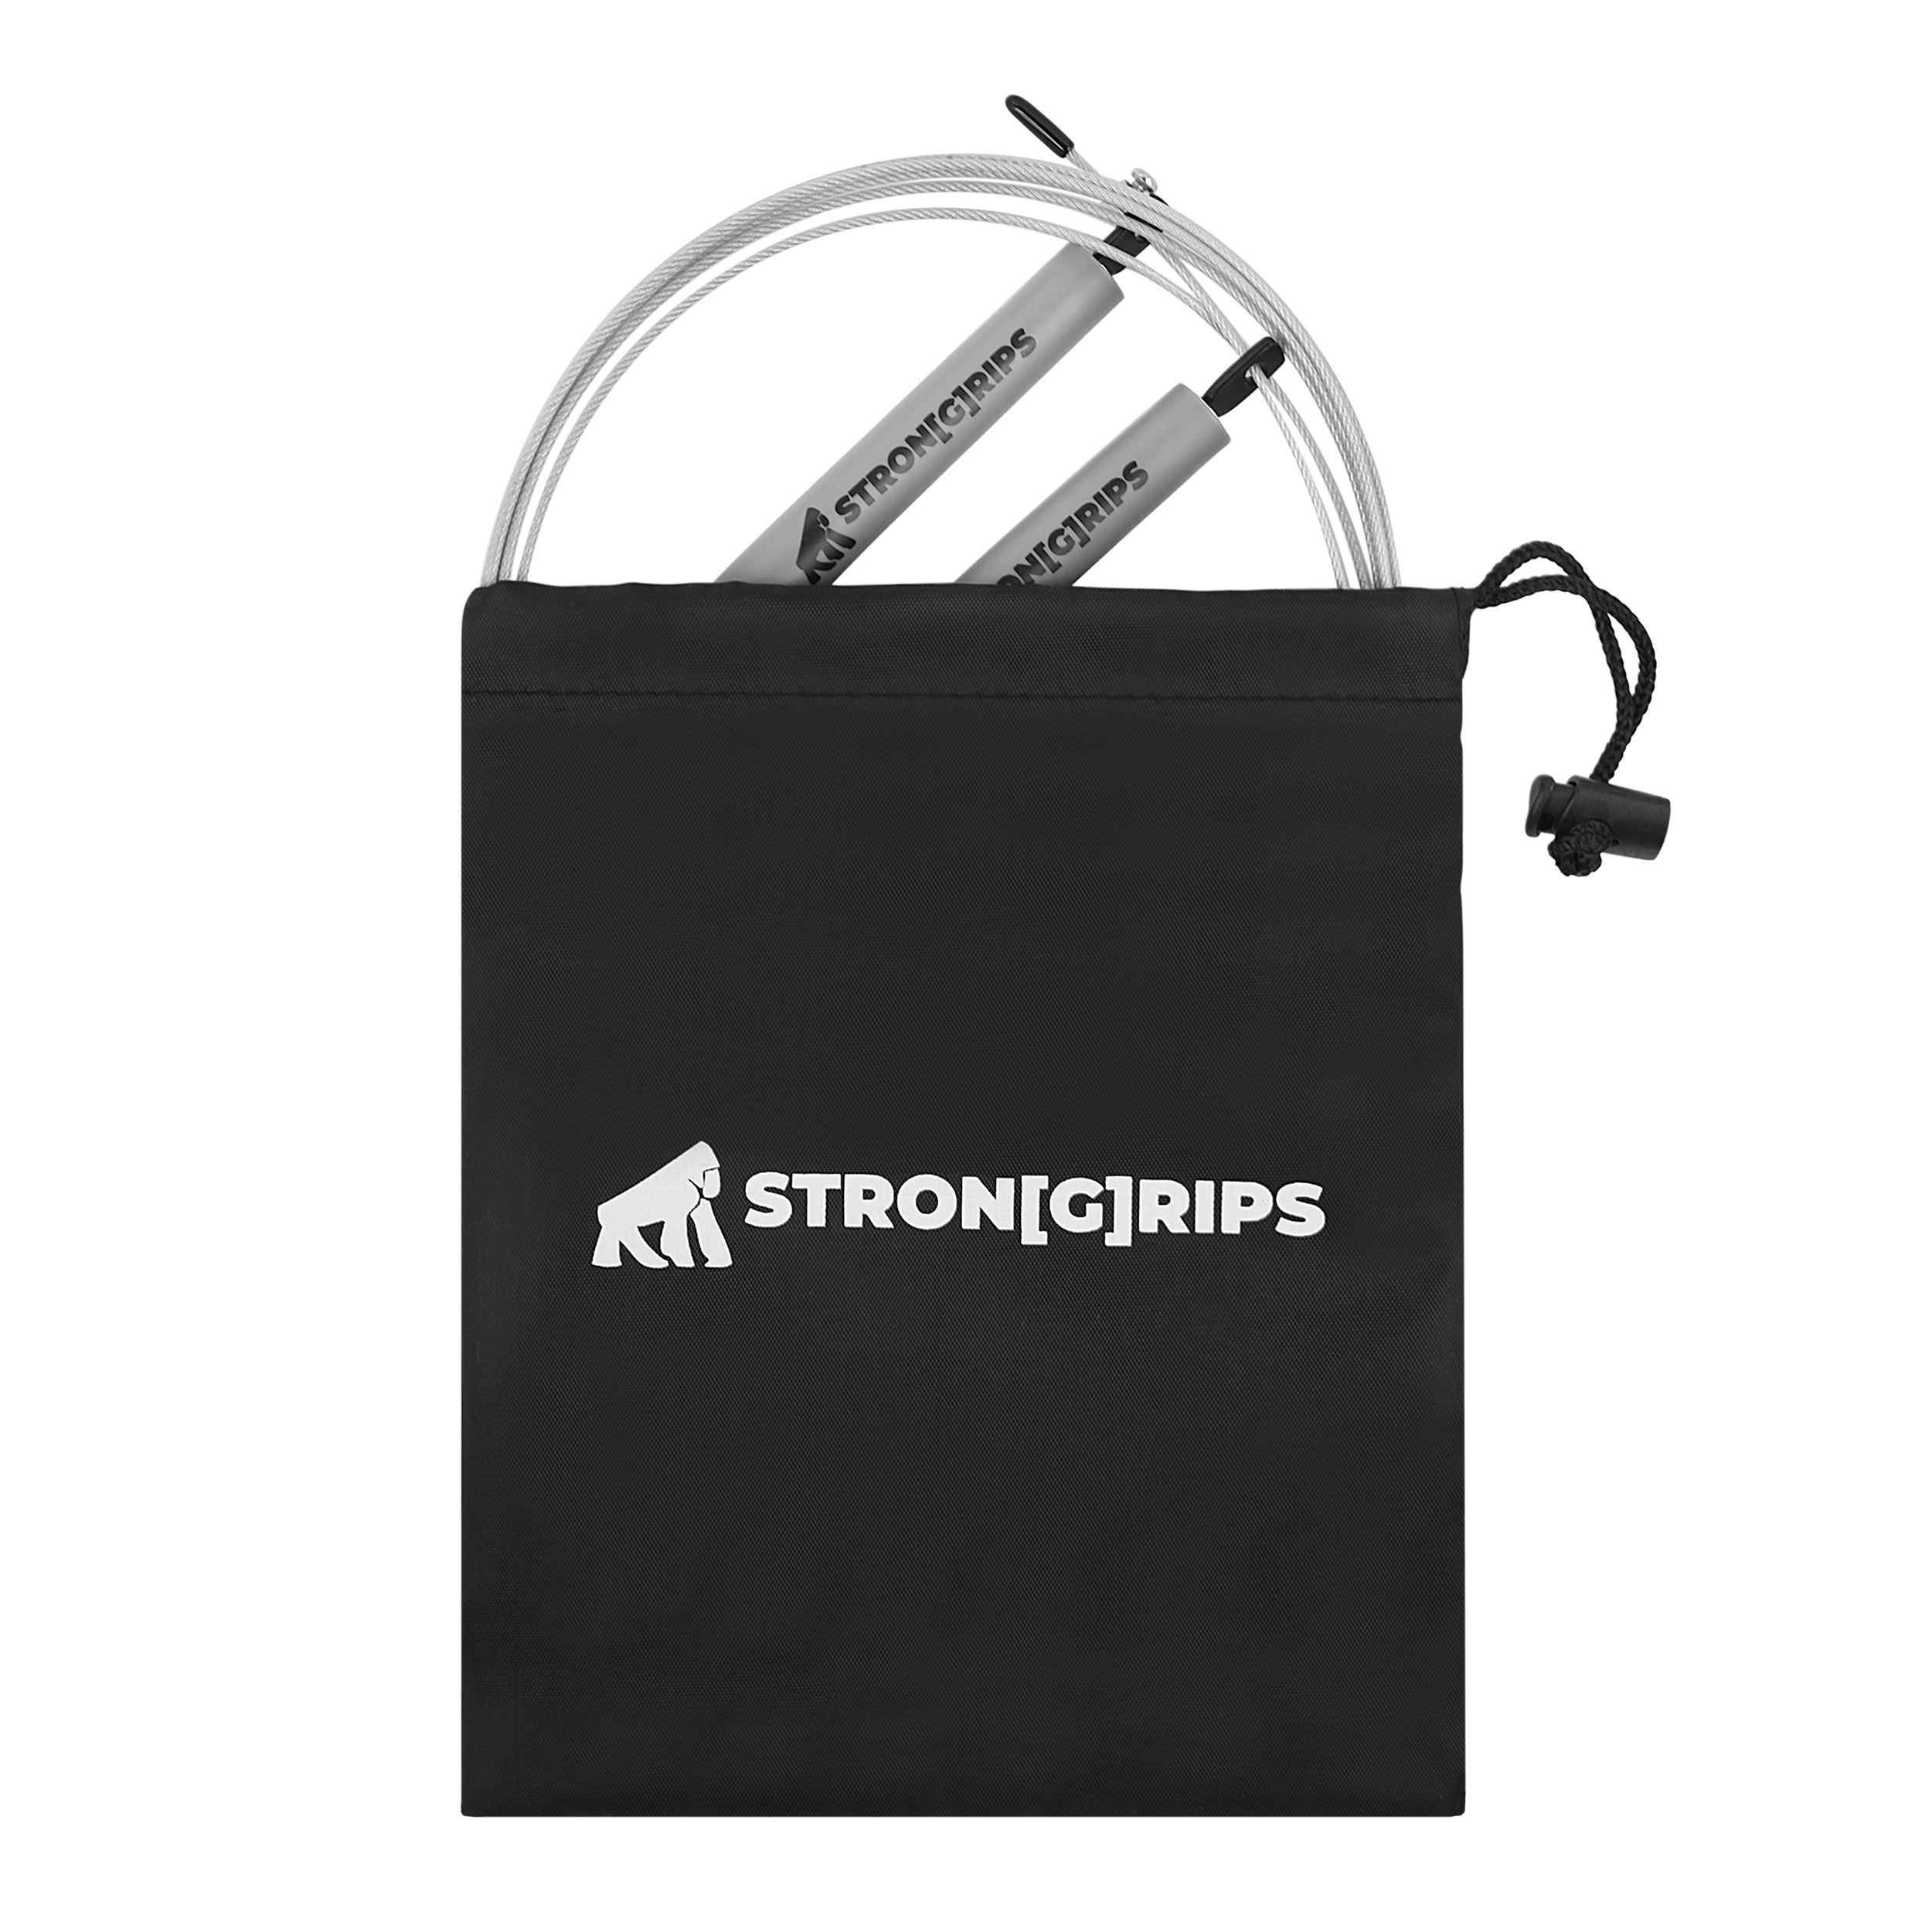 StronGrips JR-57 Atlama İpi ile en hızlı kardiyo antrenmanları